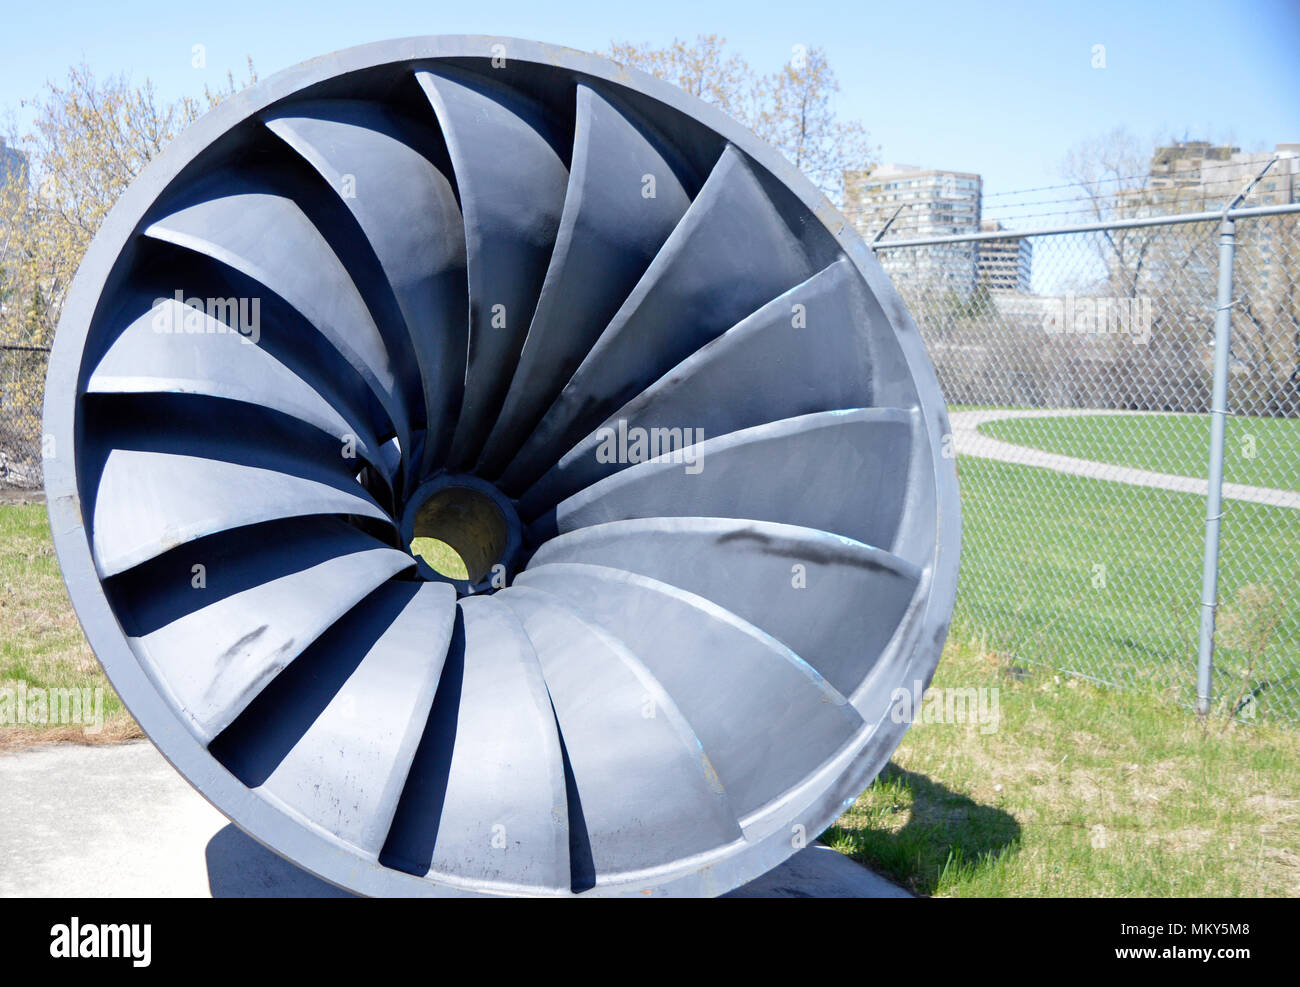 Hydro turbine immagini e fotografie stock ad alta risoluzione - Alamy